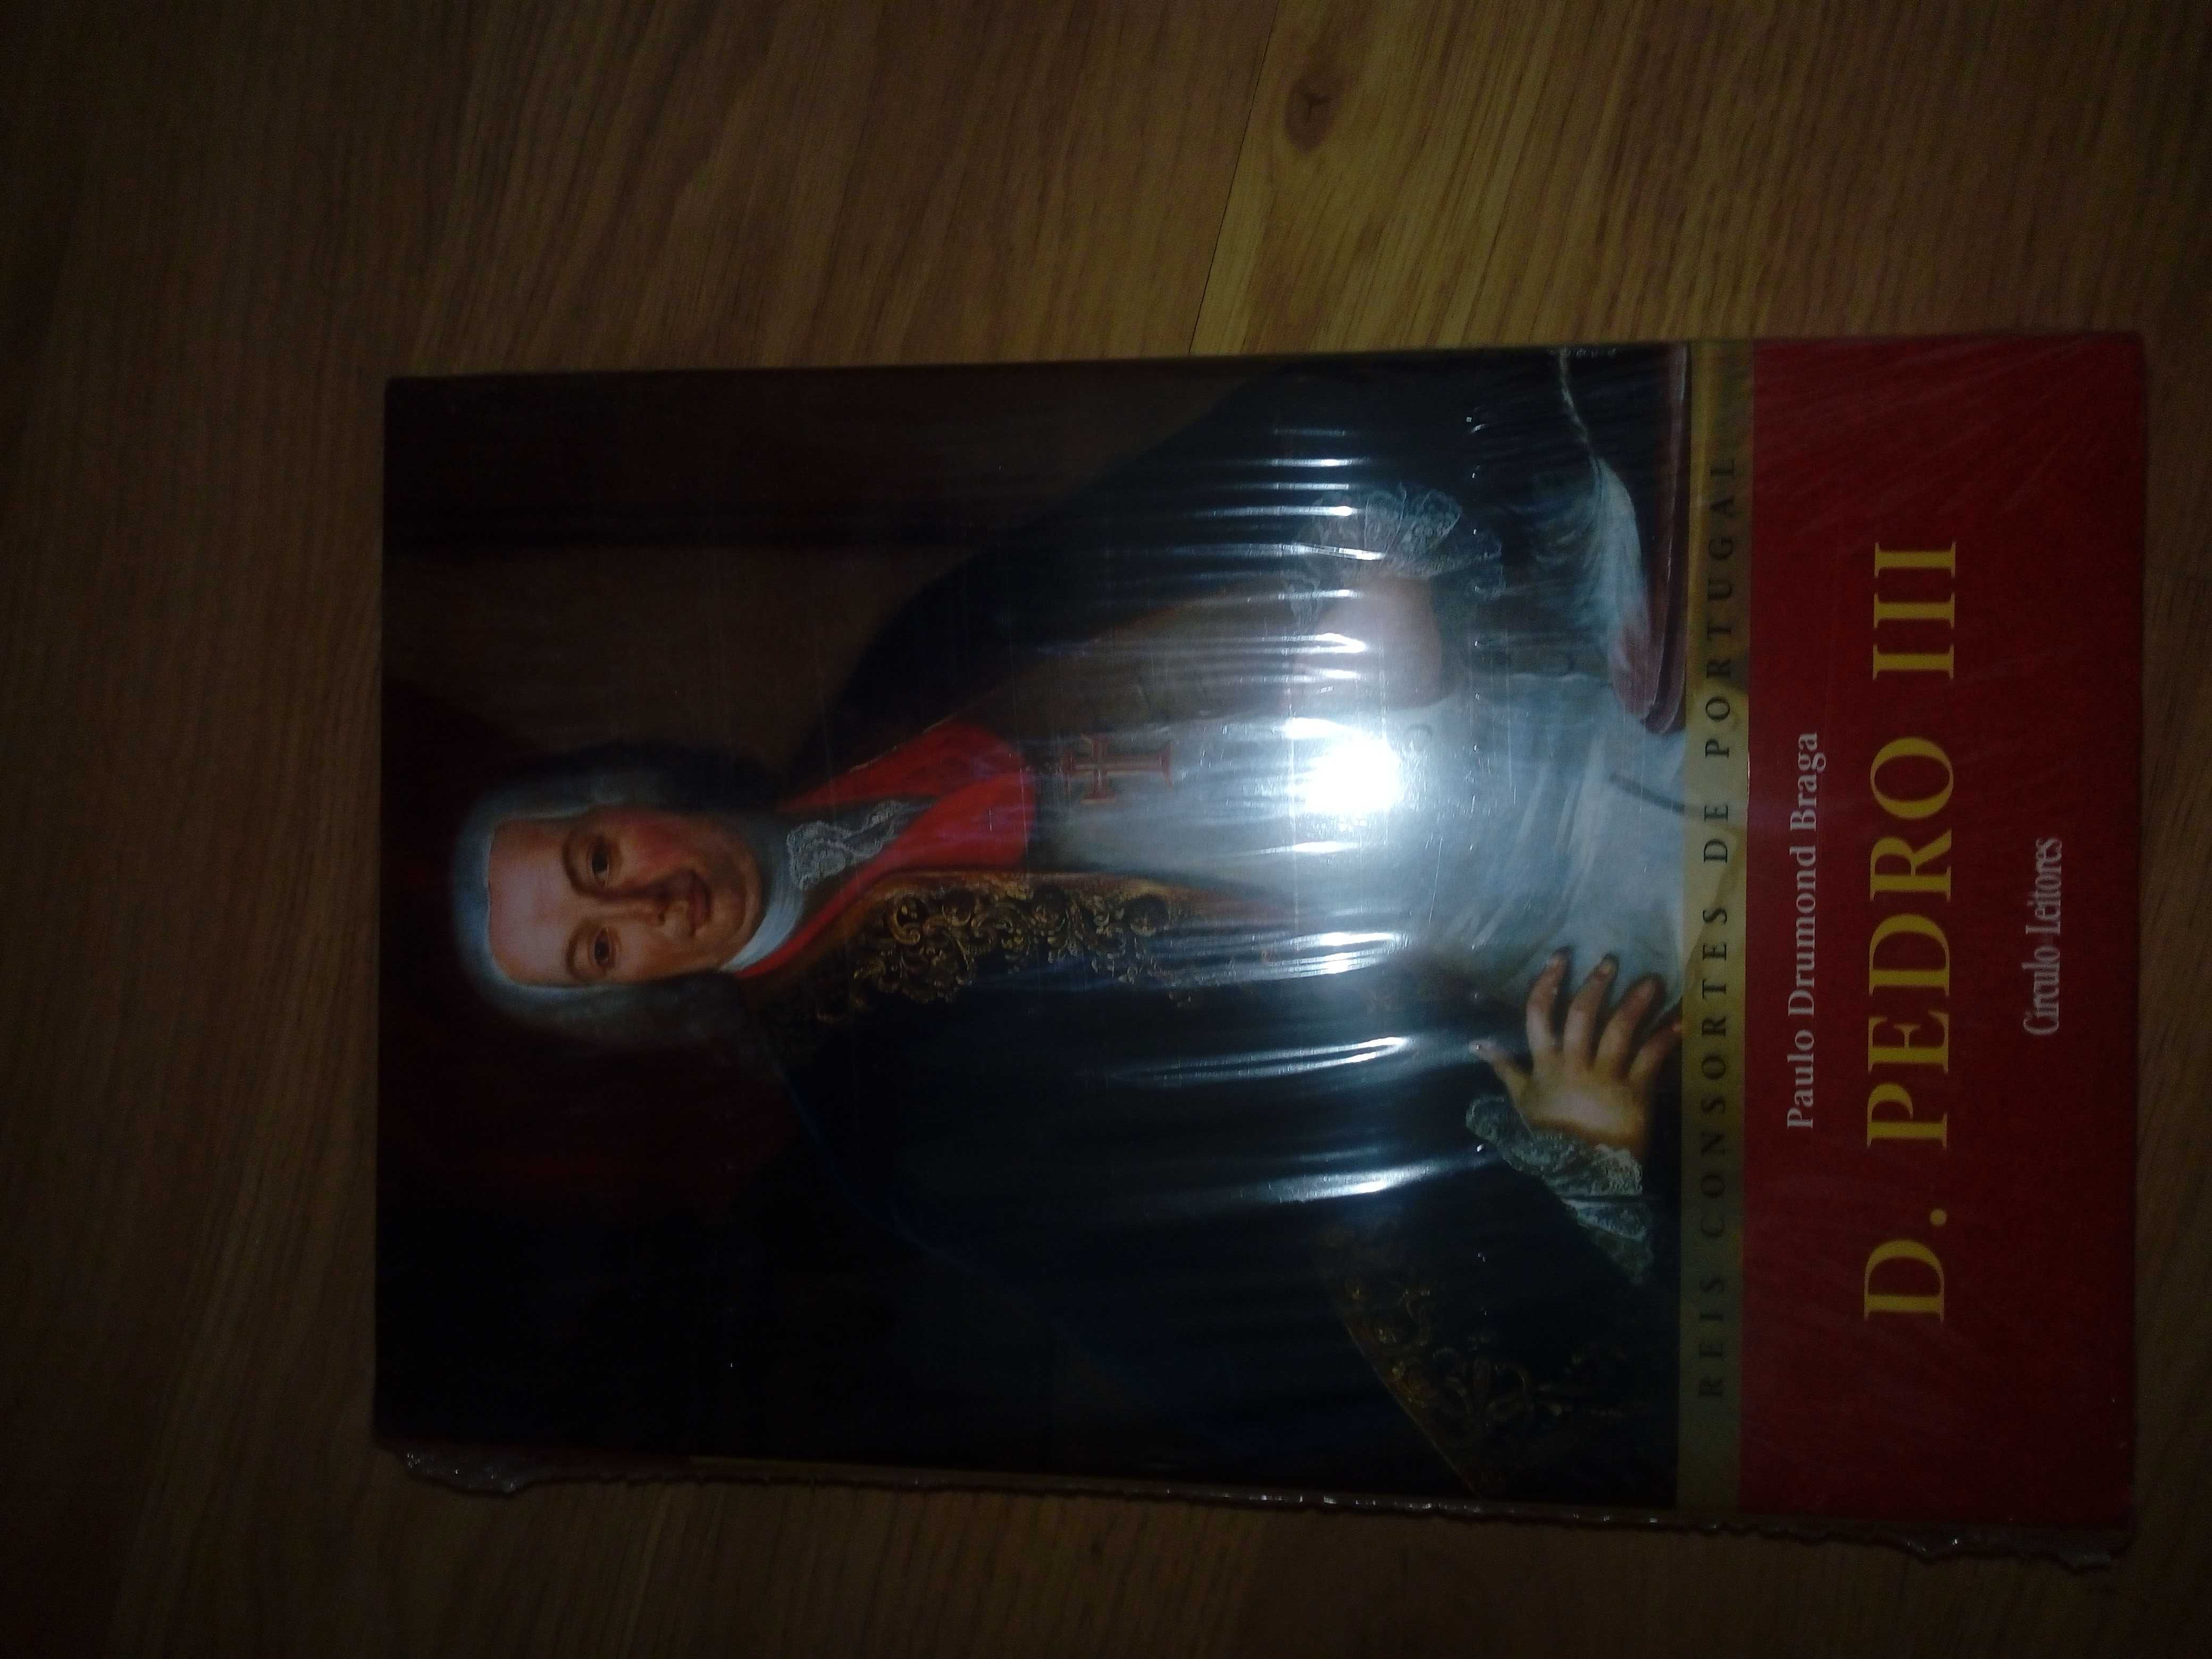 Livro "D. Pedro III", de Paulo Drumond Braga